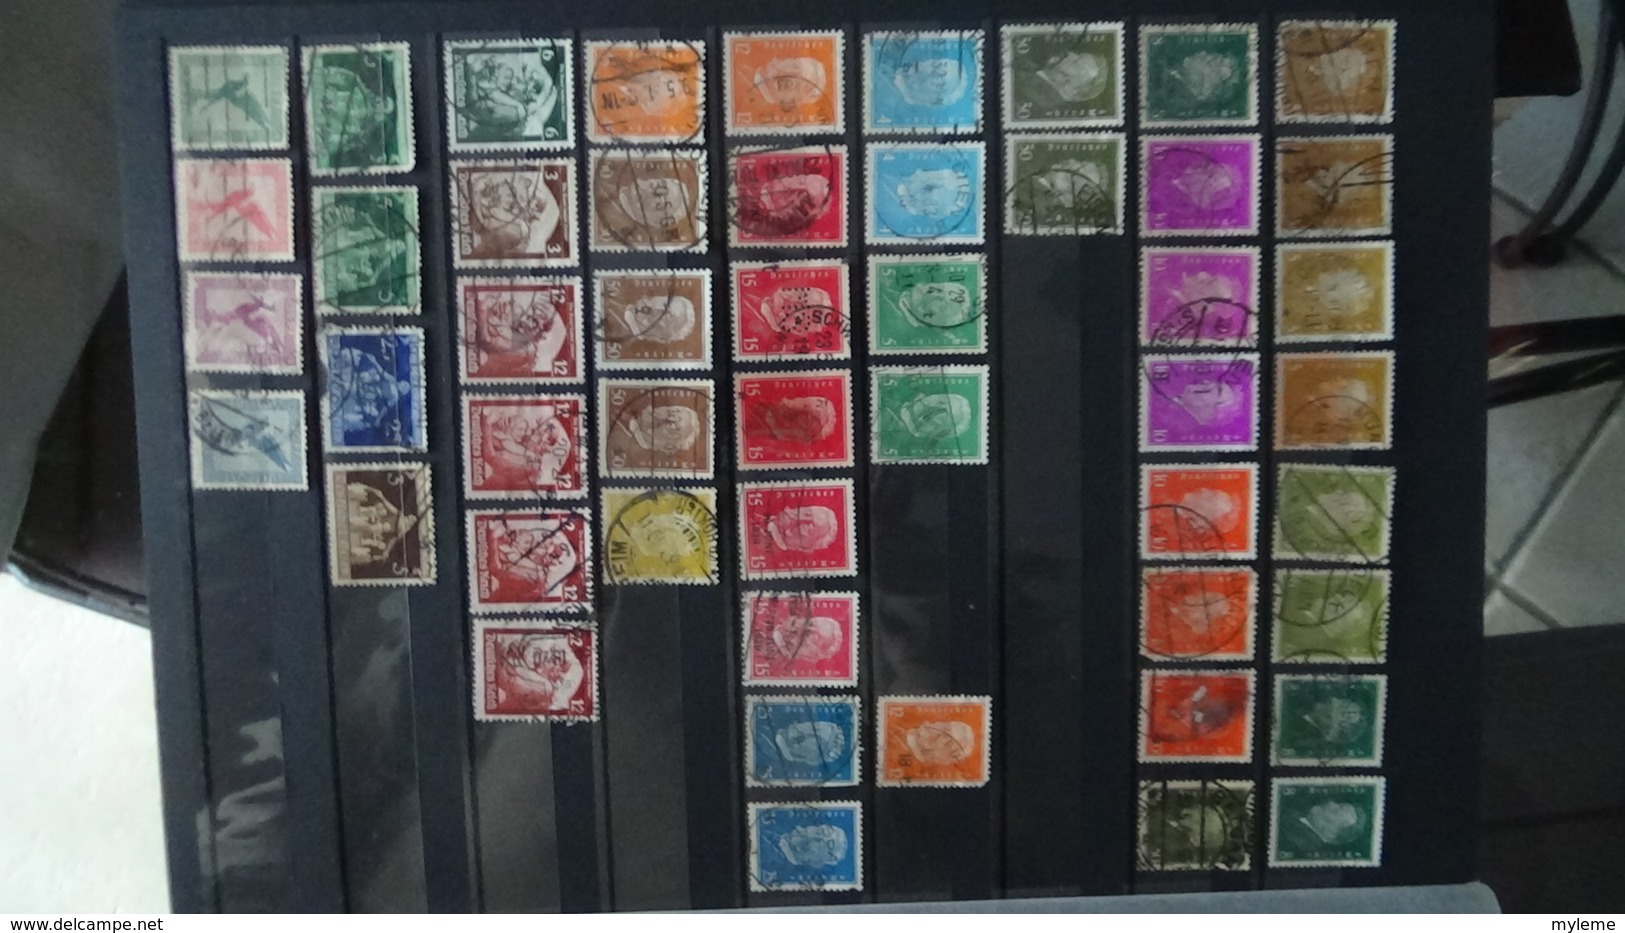 Collection Allemagne majorité oblitérés dont timbres ** de France côte 299 euros hors timbres de l'album !!!